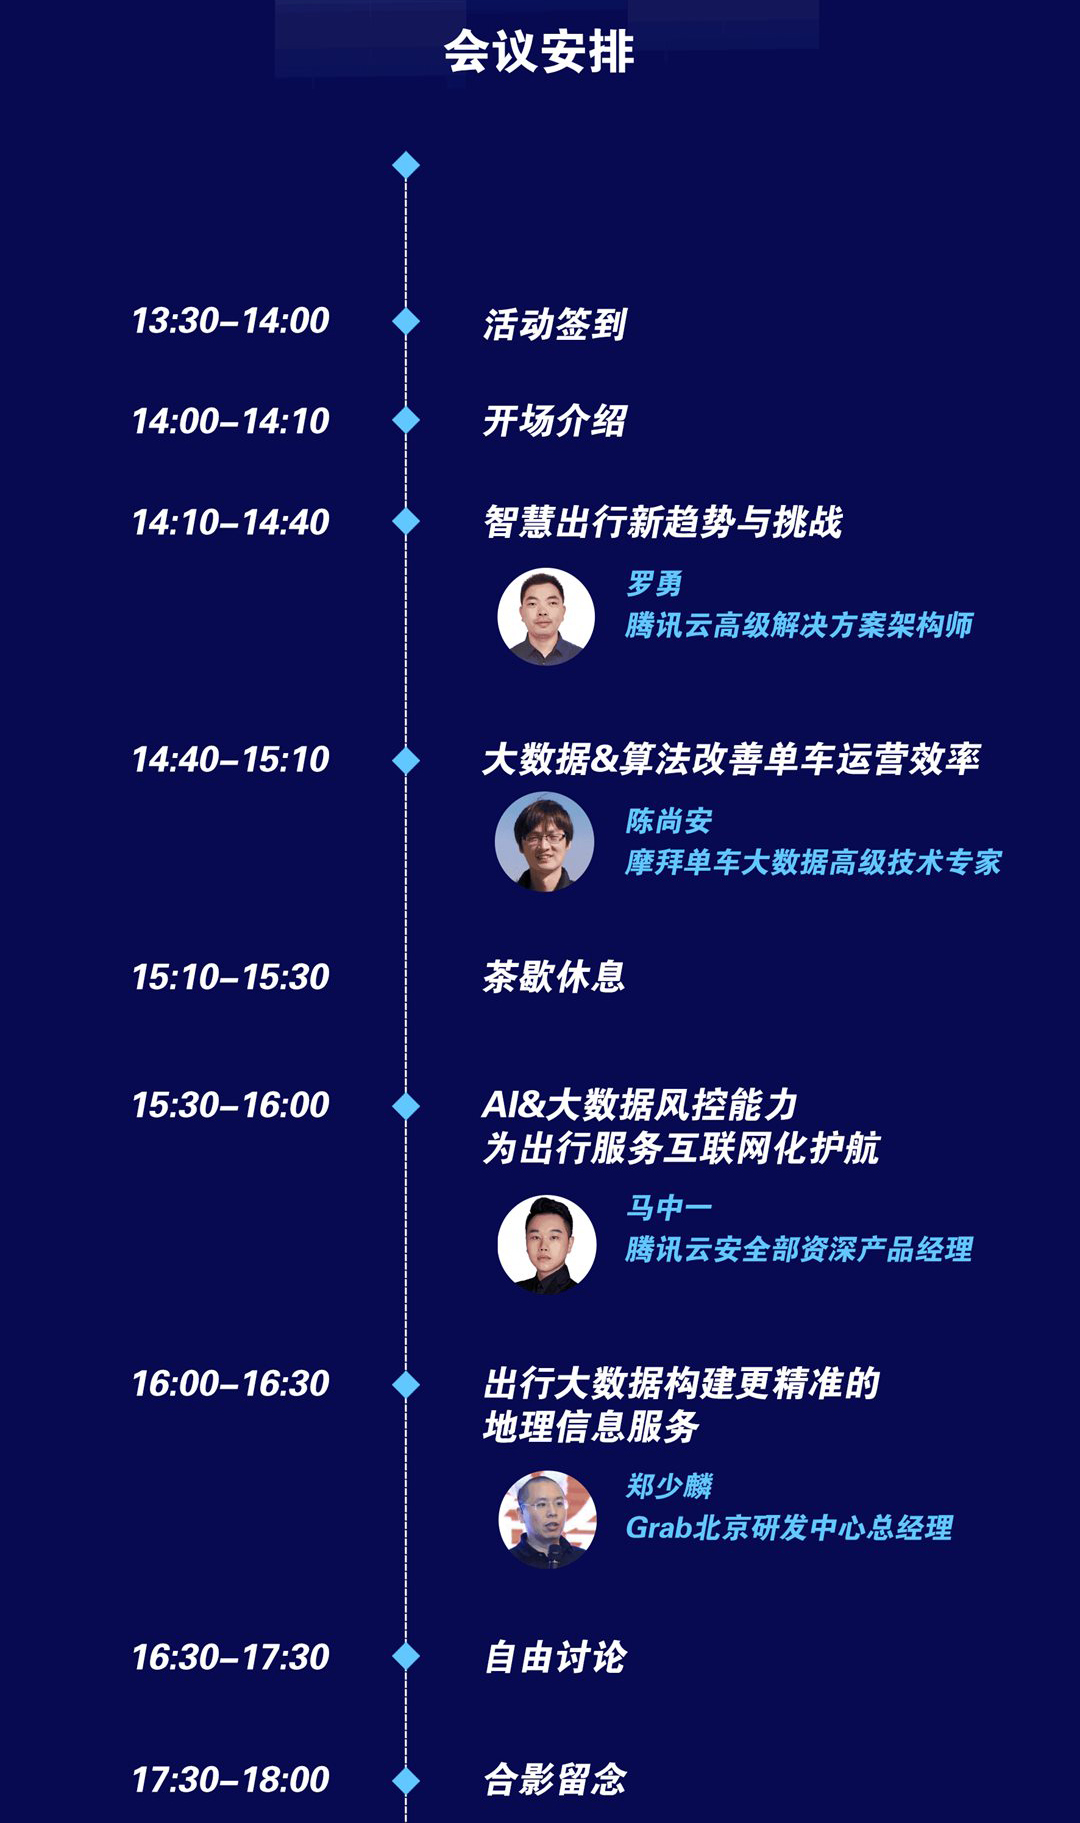 腾讯云“智能+互联网TechDay”： 揭秘智慧出行核心技术与创新实践2019（北京）